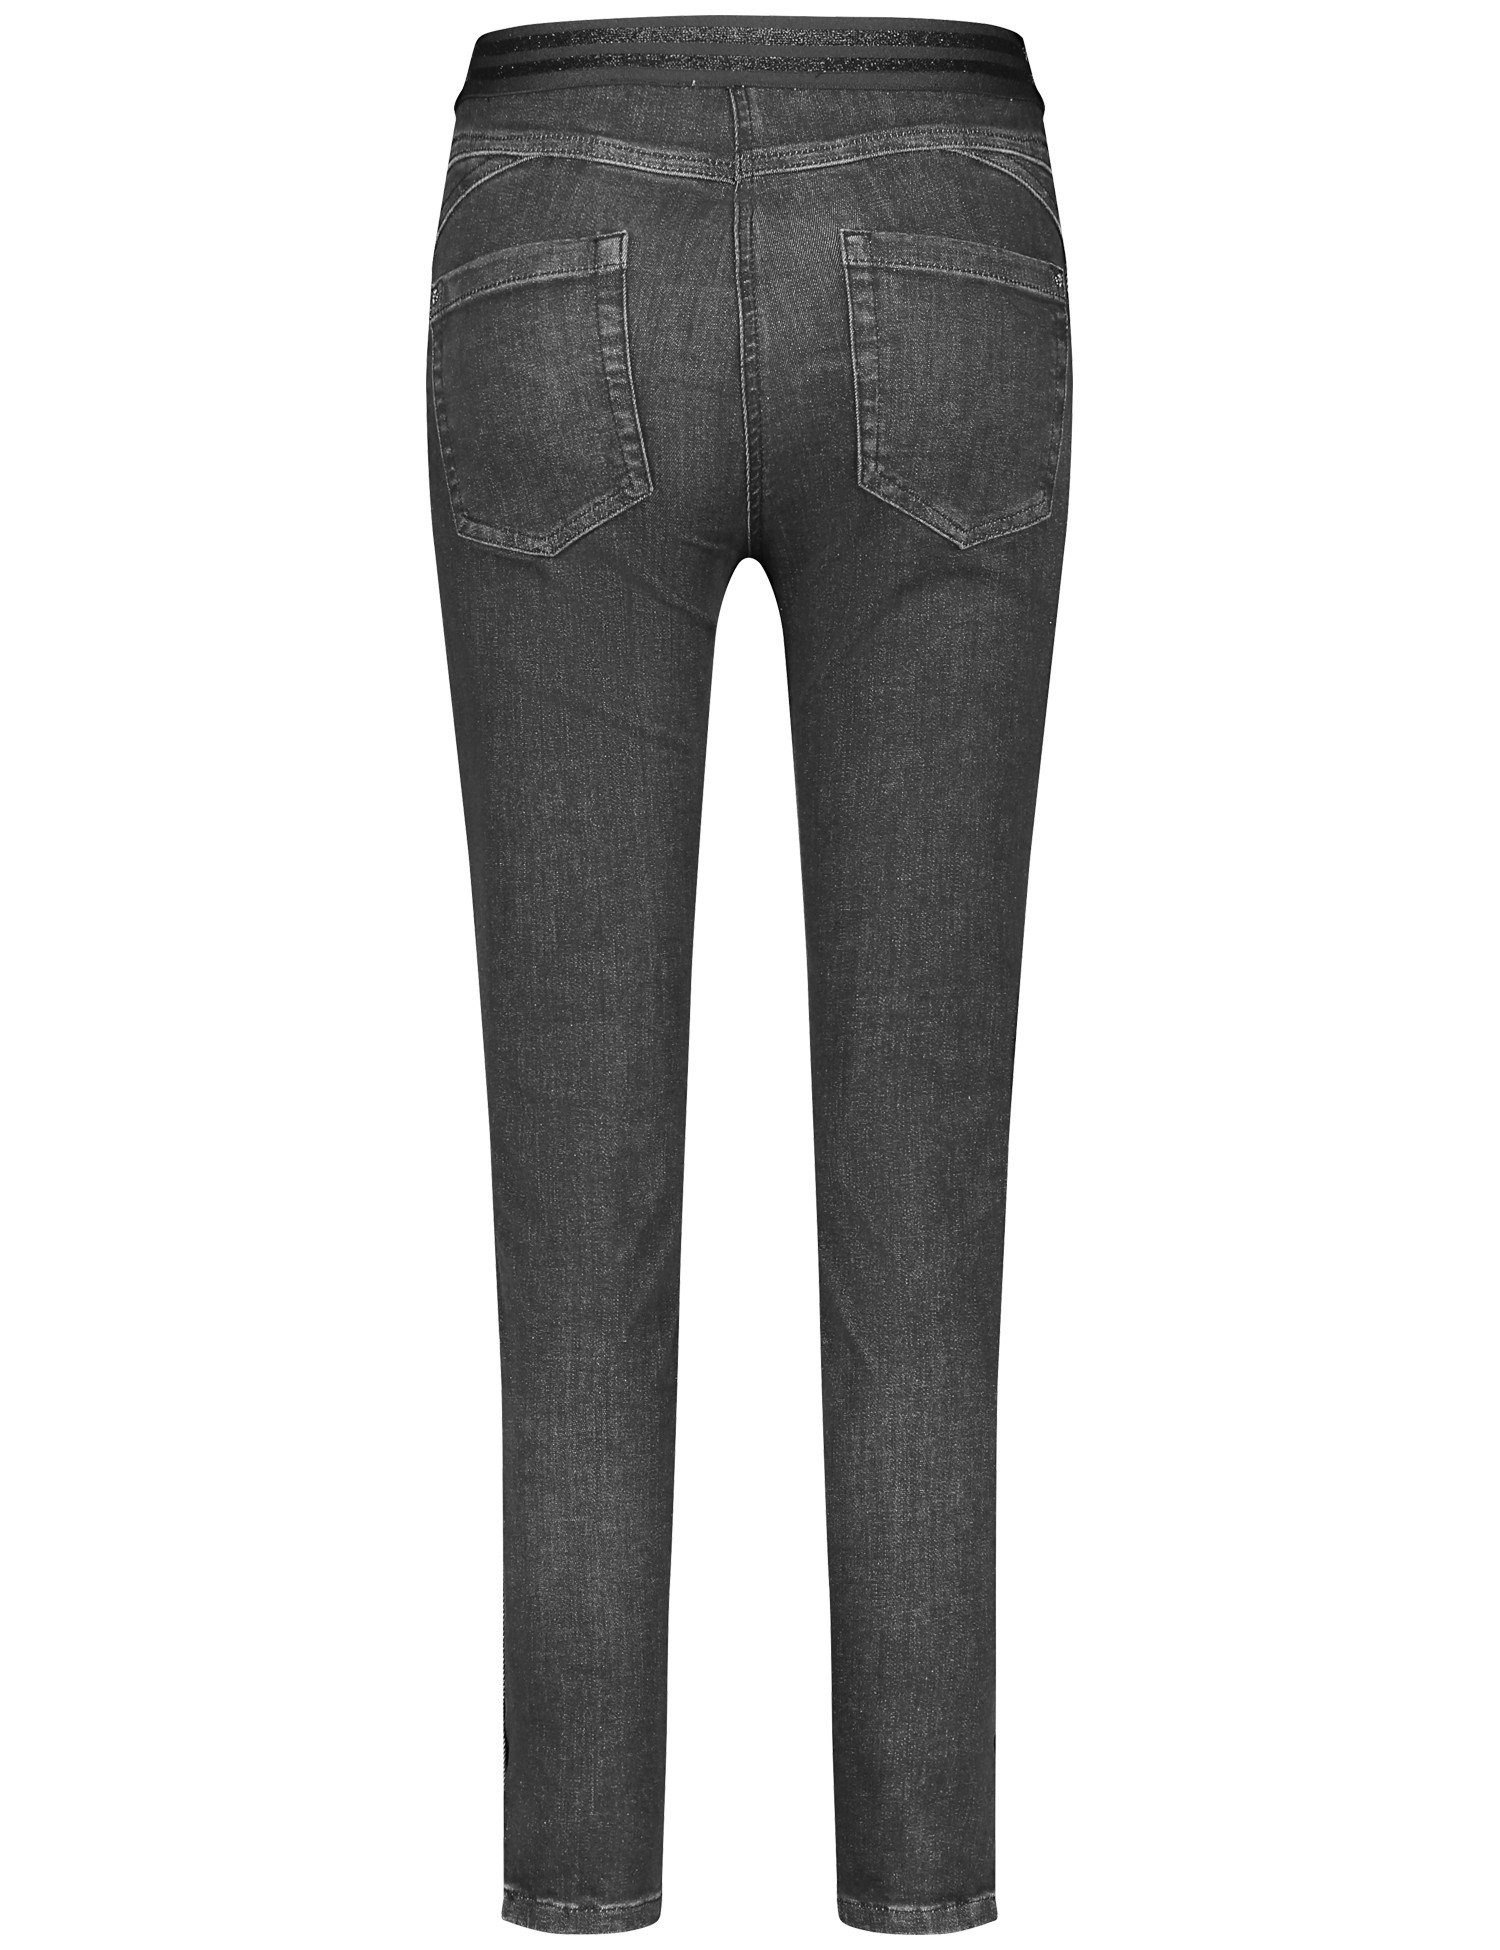 WEBER GERRY Jeggings Denim Körpernahe SHAPE 7/8-Jeans BEST4ME Black